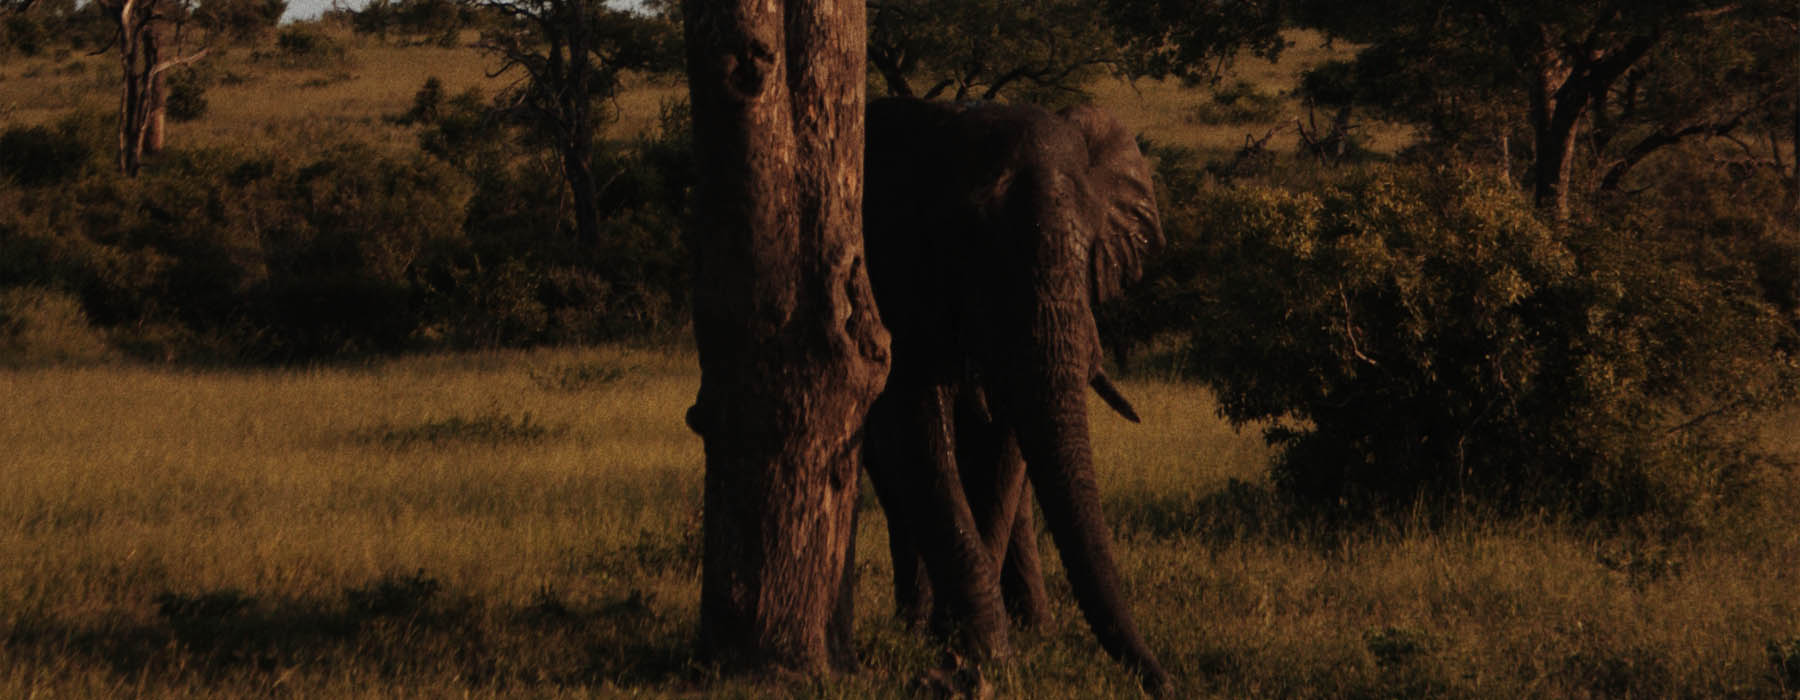 Lower Zambezi National Park<br class="hidden-md hidden-lg" /> Holidays